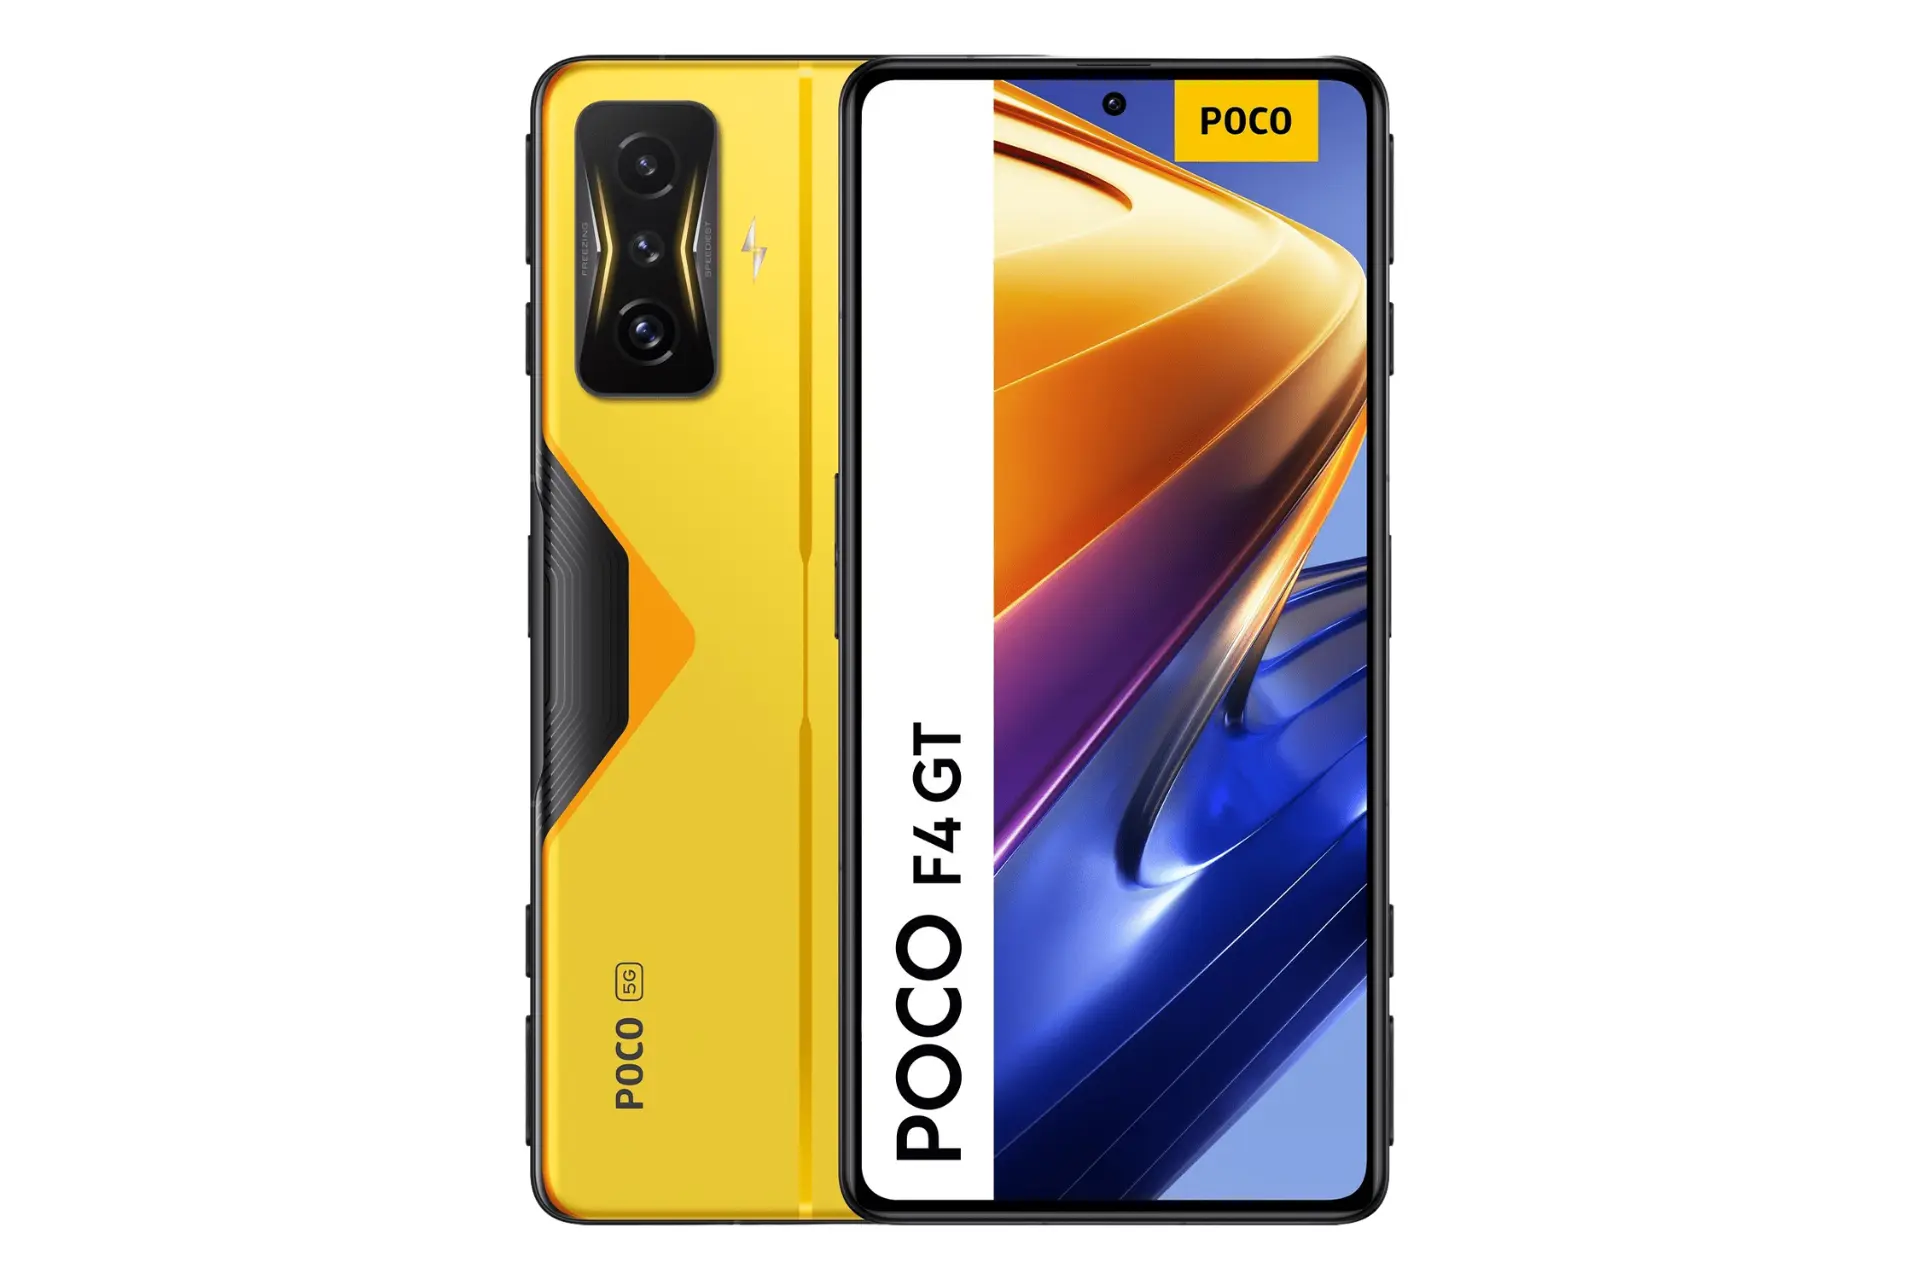 نمای کلی گوشی موبایل پوکو F4 GT شیائومی / Xiaomi Poco F4 GT با نمایش نمایشگر، دوربین و لوگوی پنل پشت رنگ زرد